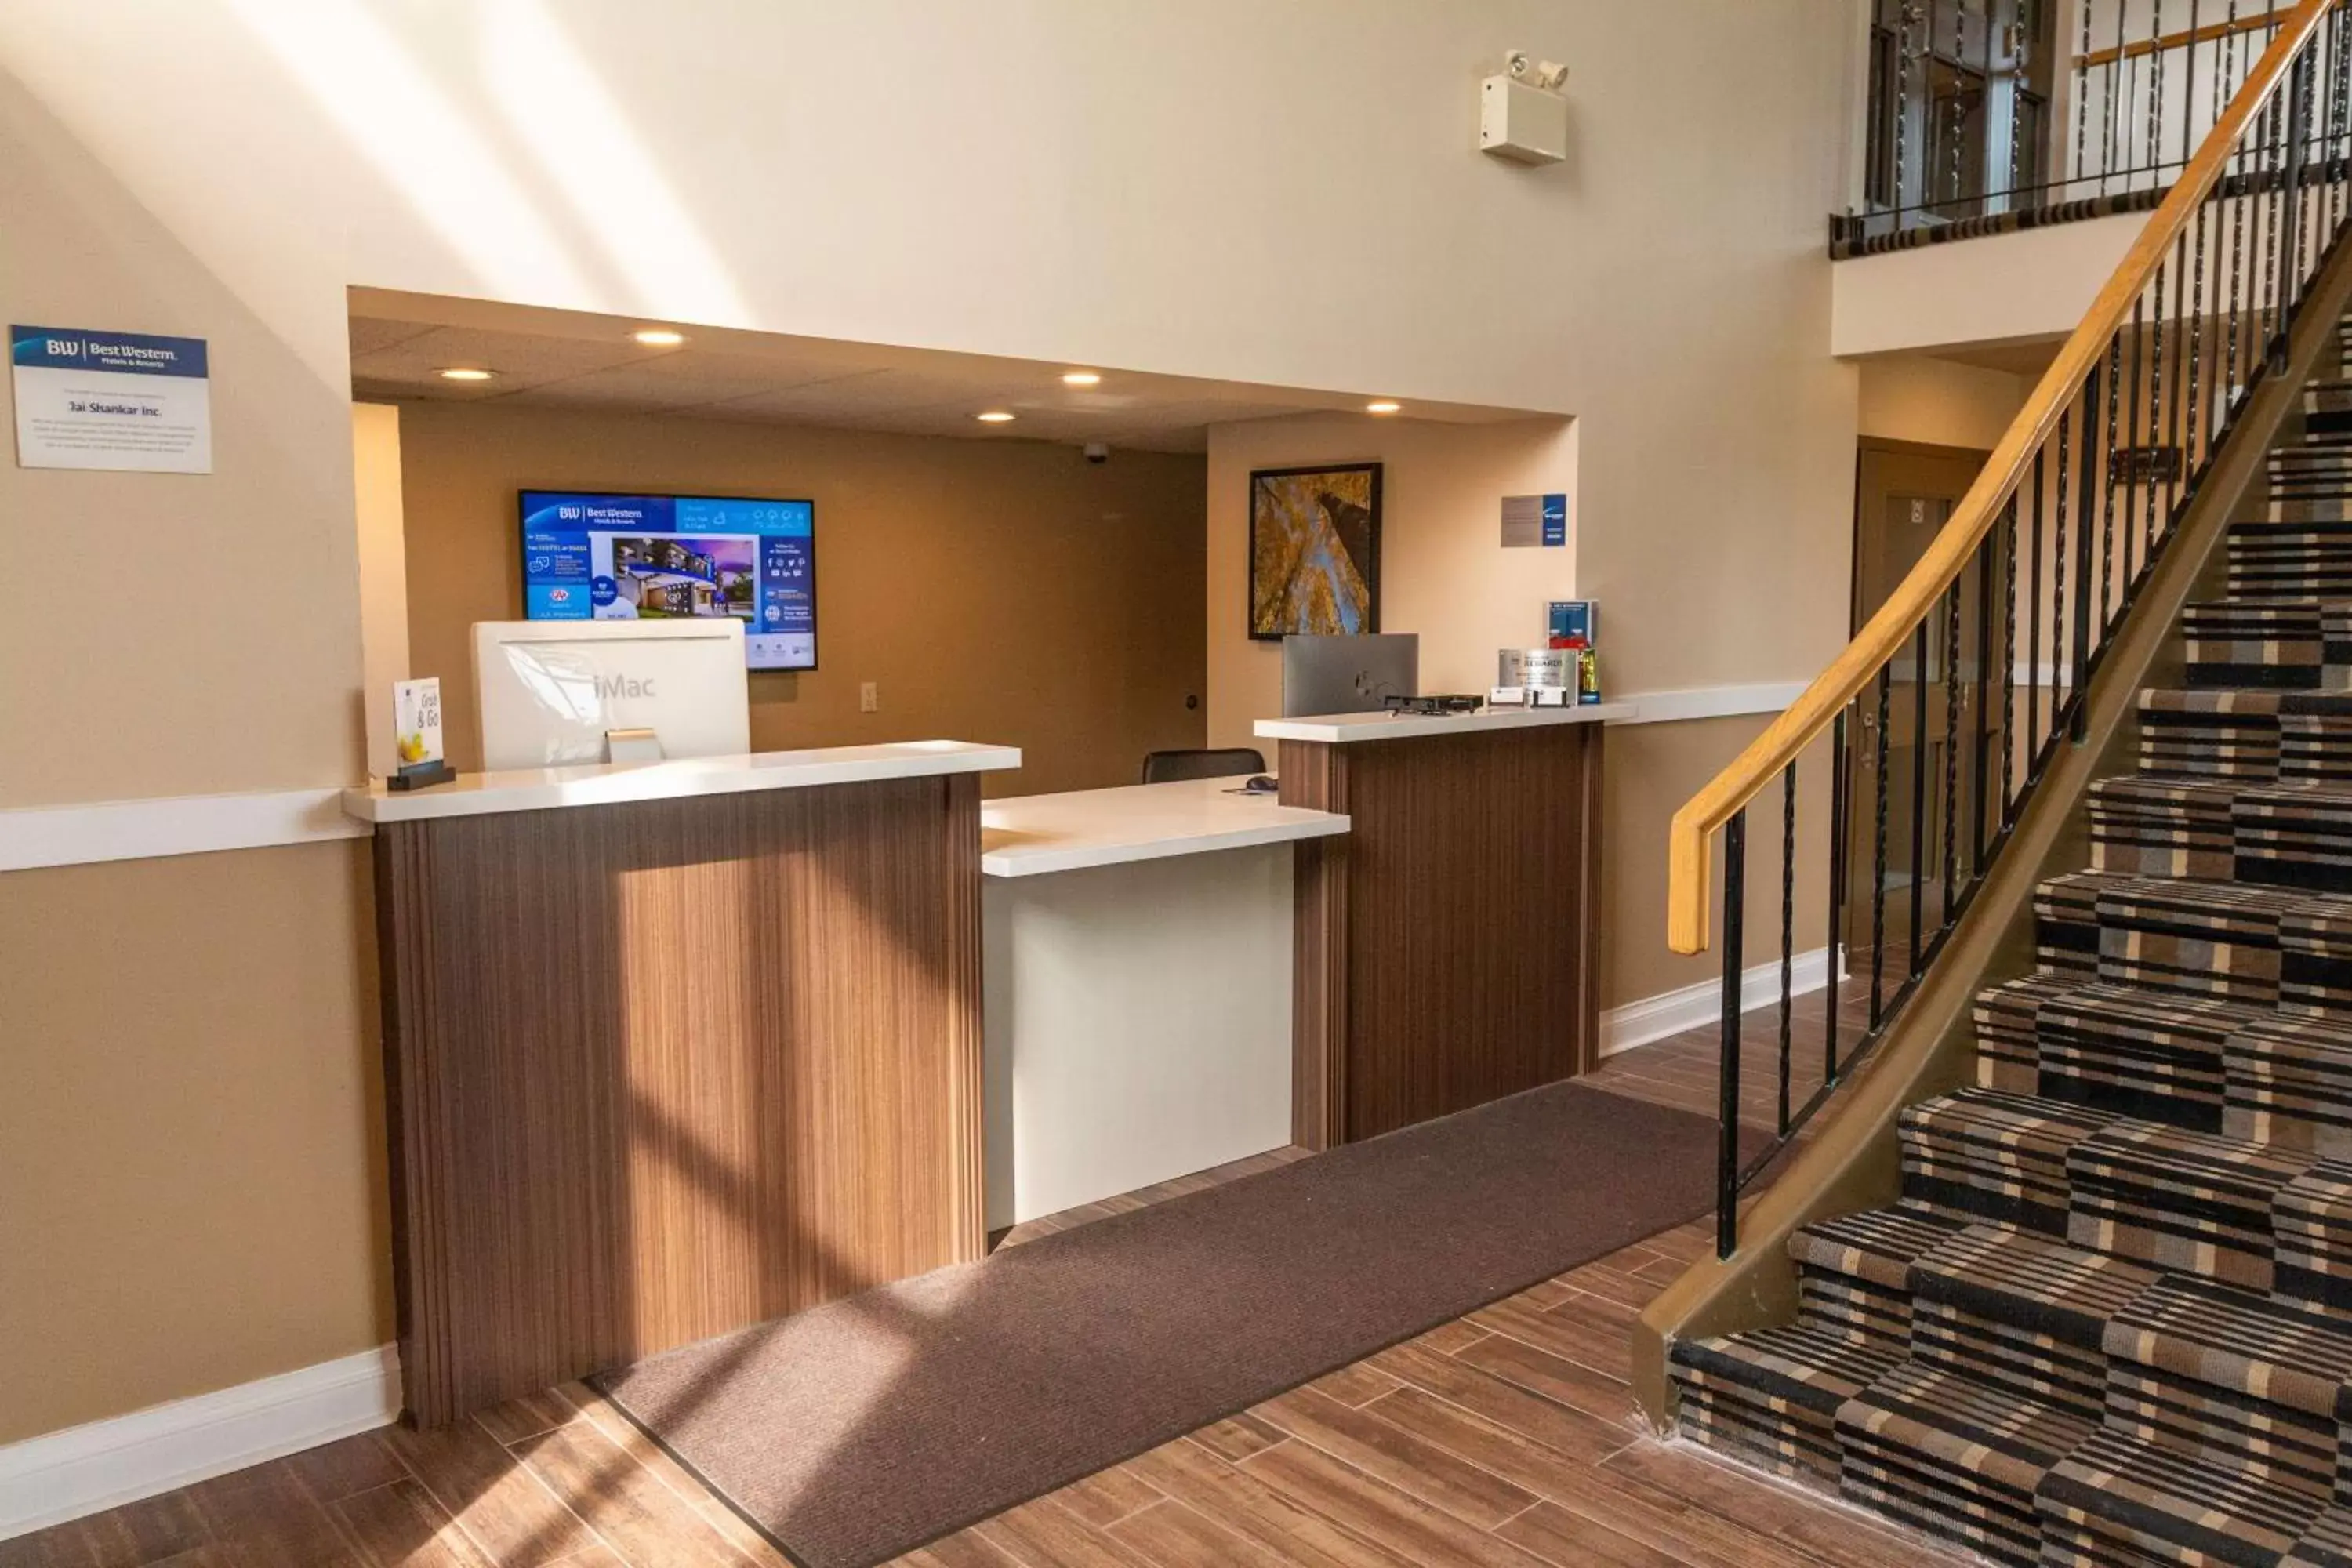 Lobby or reception, Lobby/Reception in Best Western Smiths Falls Hotel